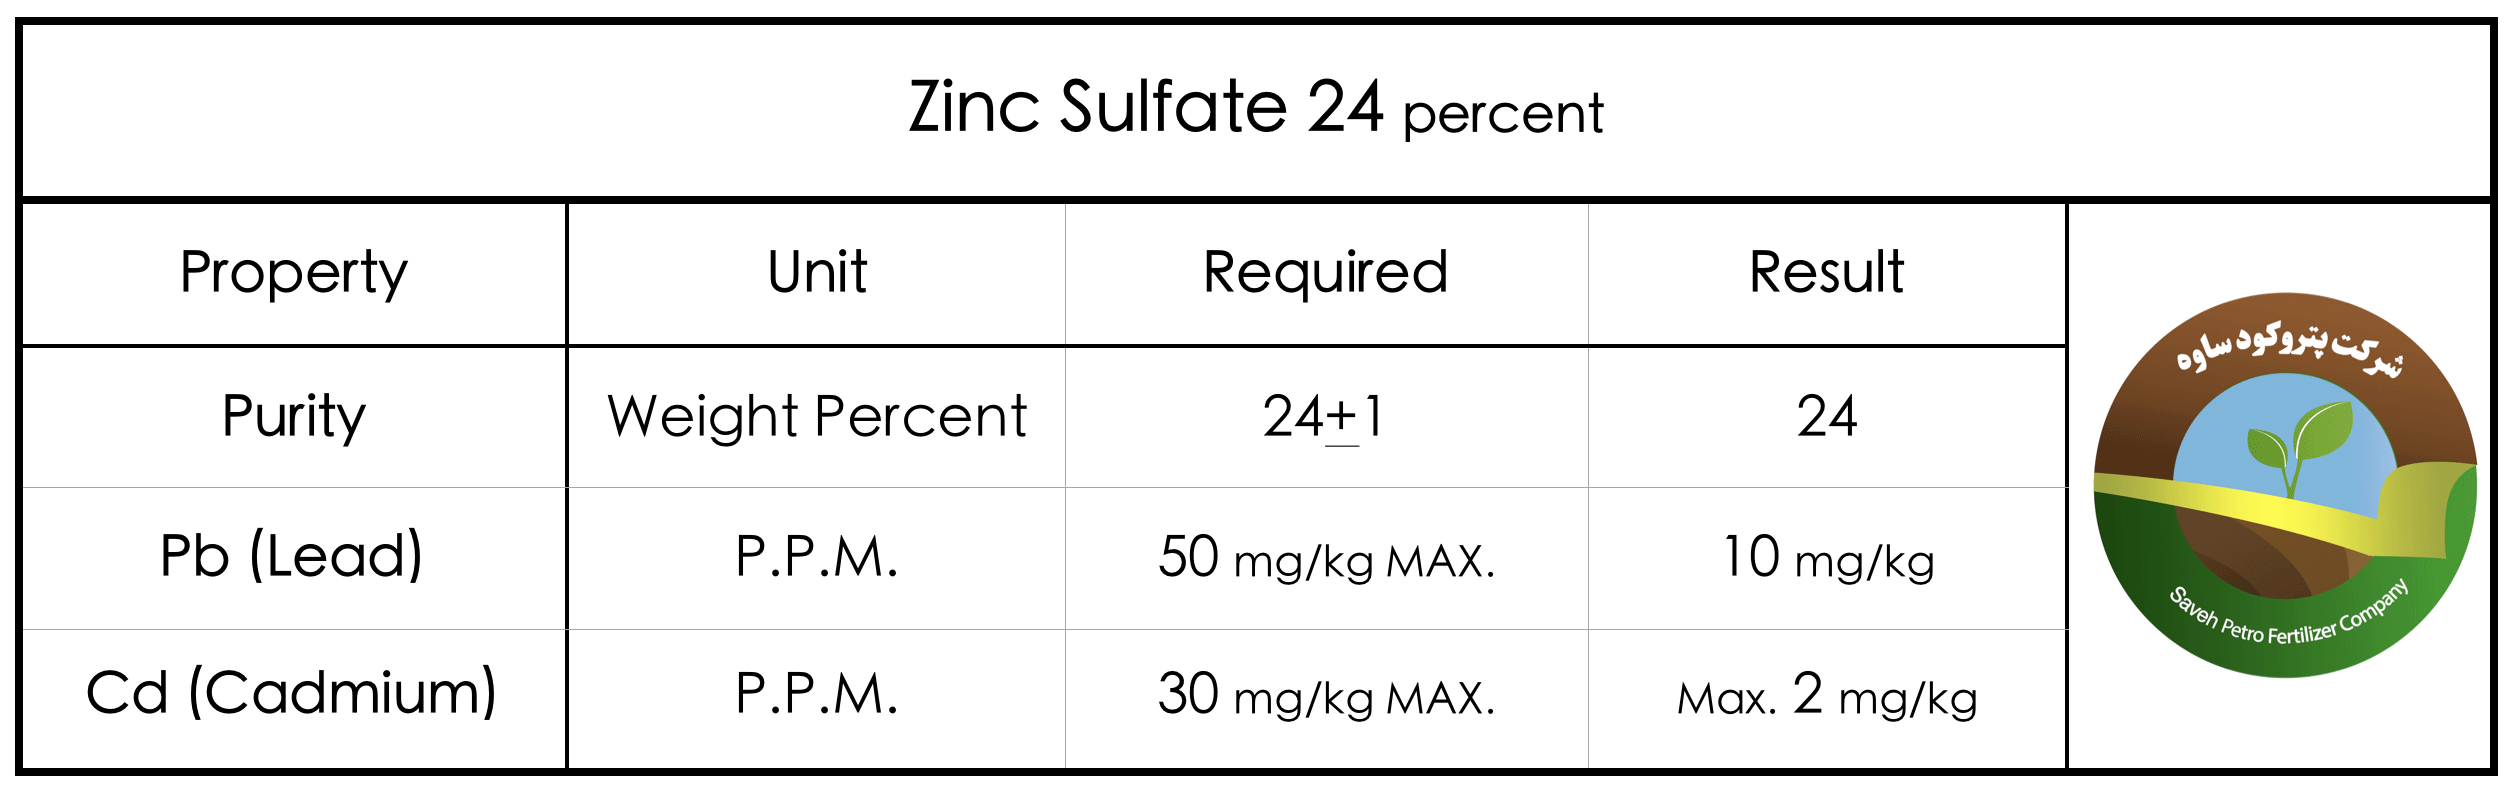 Zinc Sulfate 24